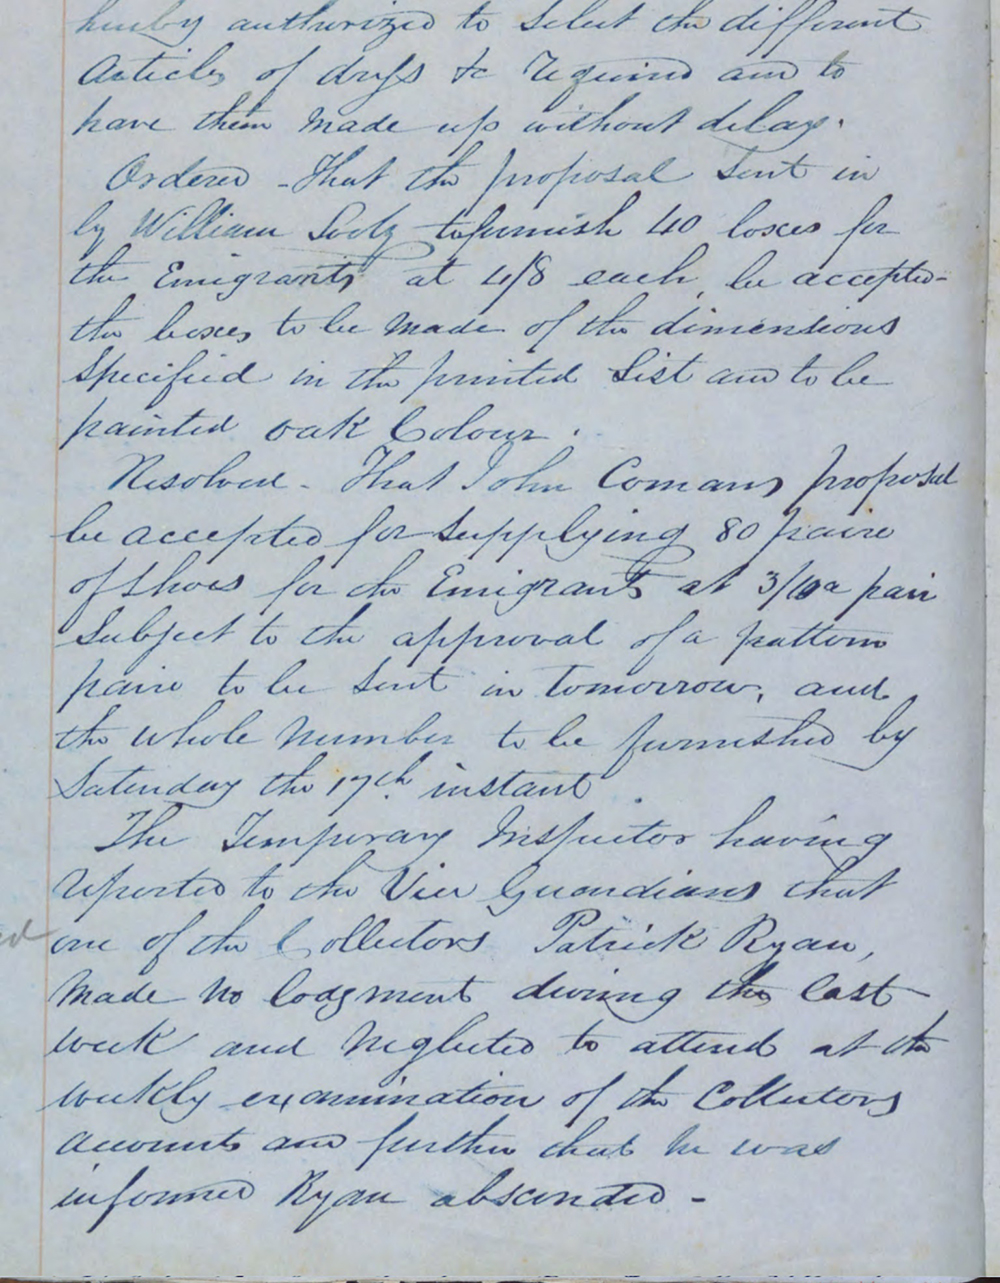 Cashel female emigration document